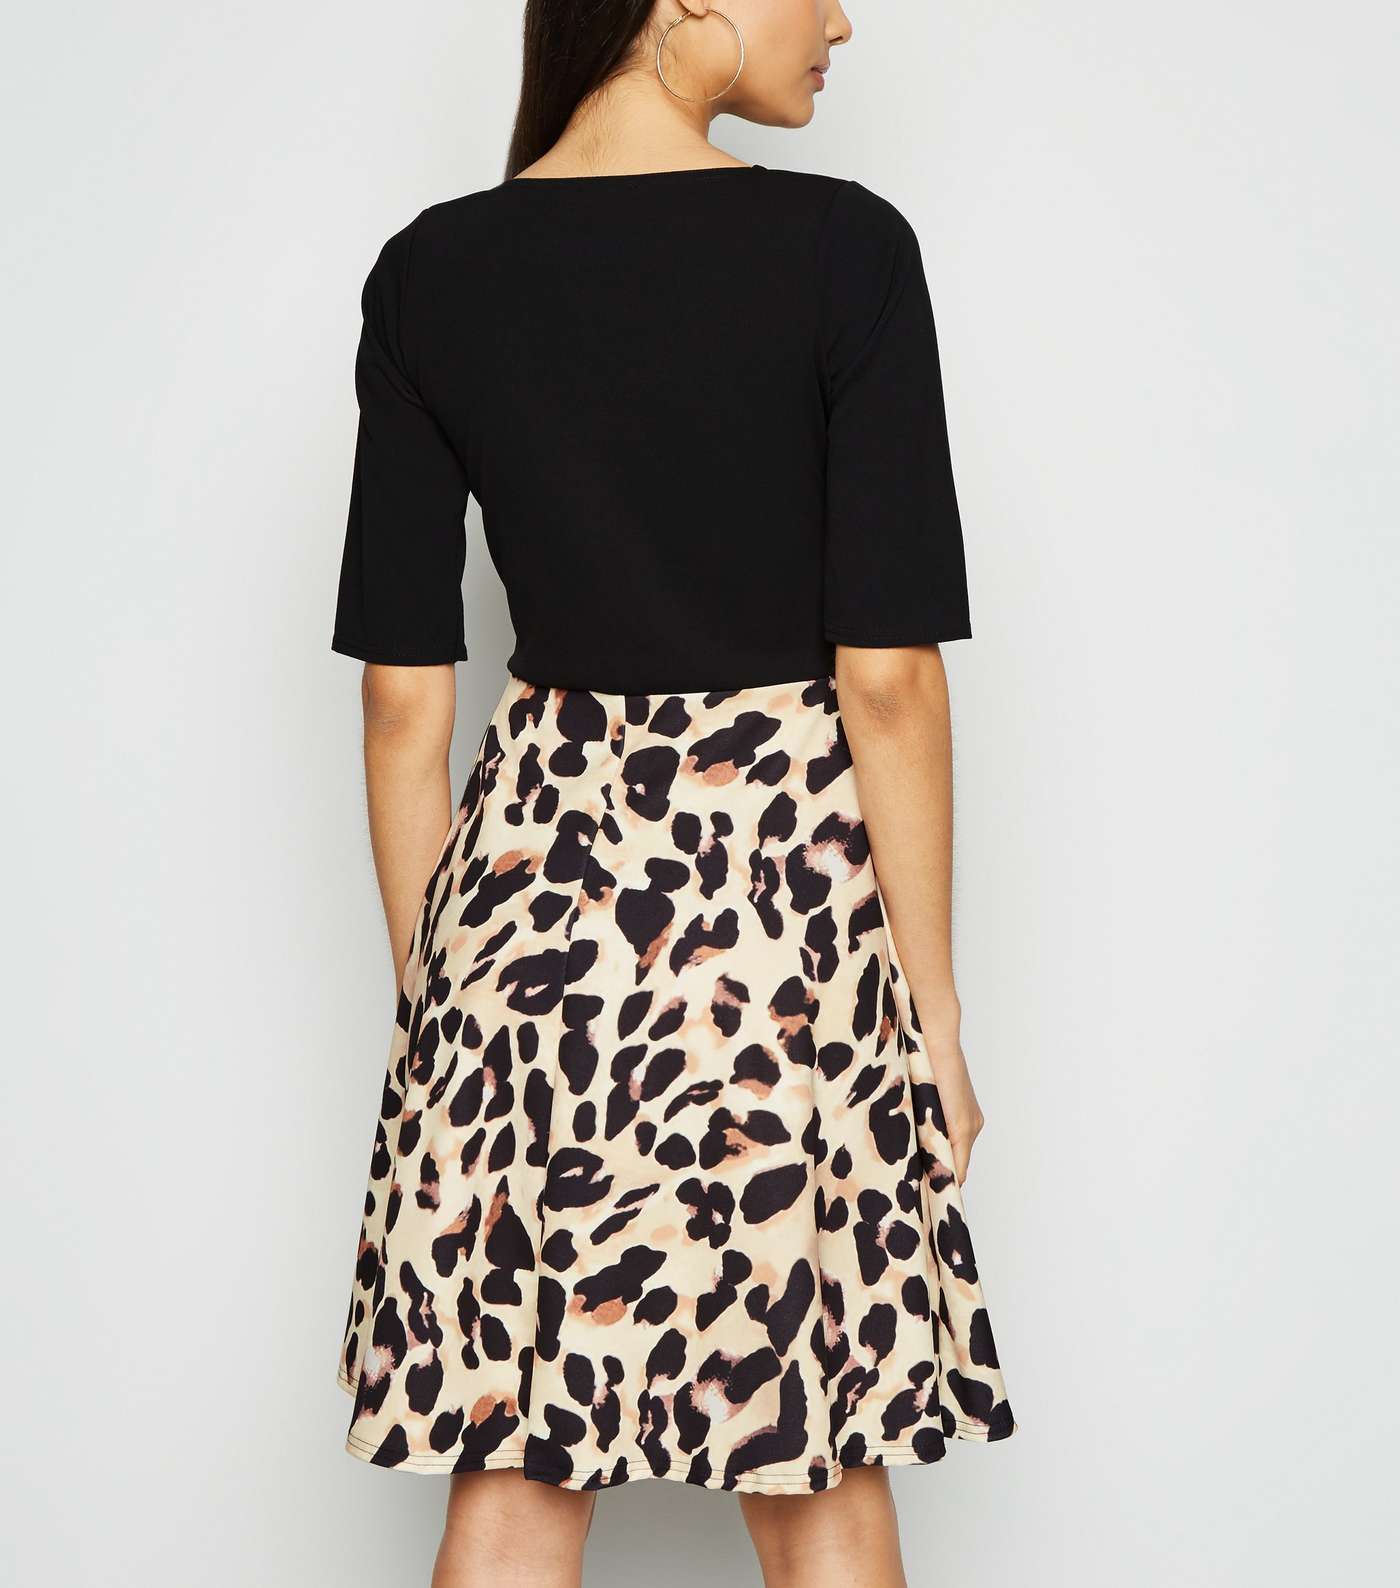 Missfiga Brown Leopard Print Skirt Skater Dress Image 3